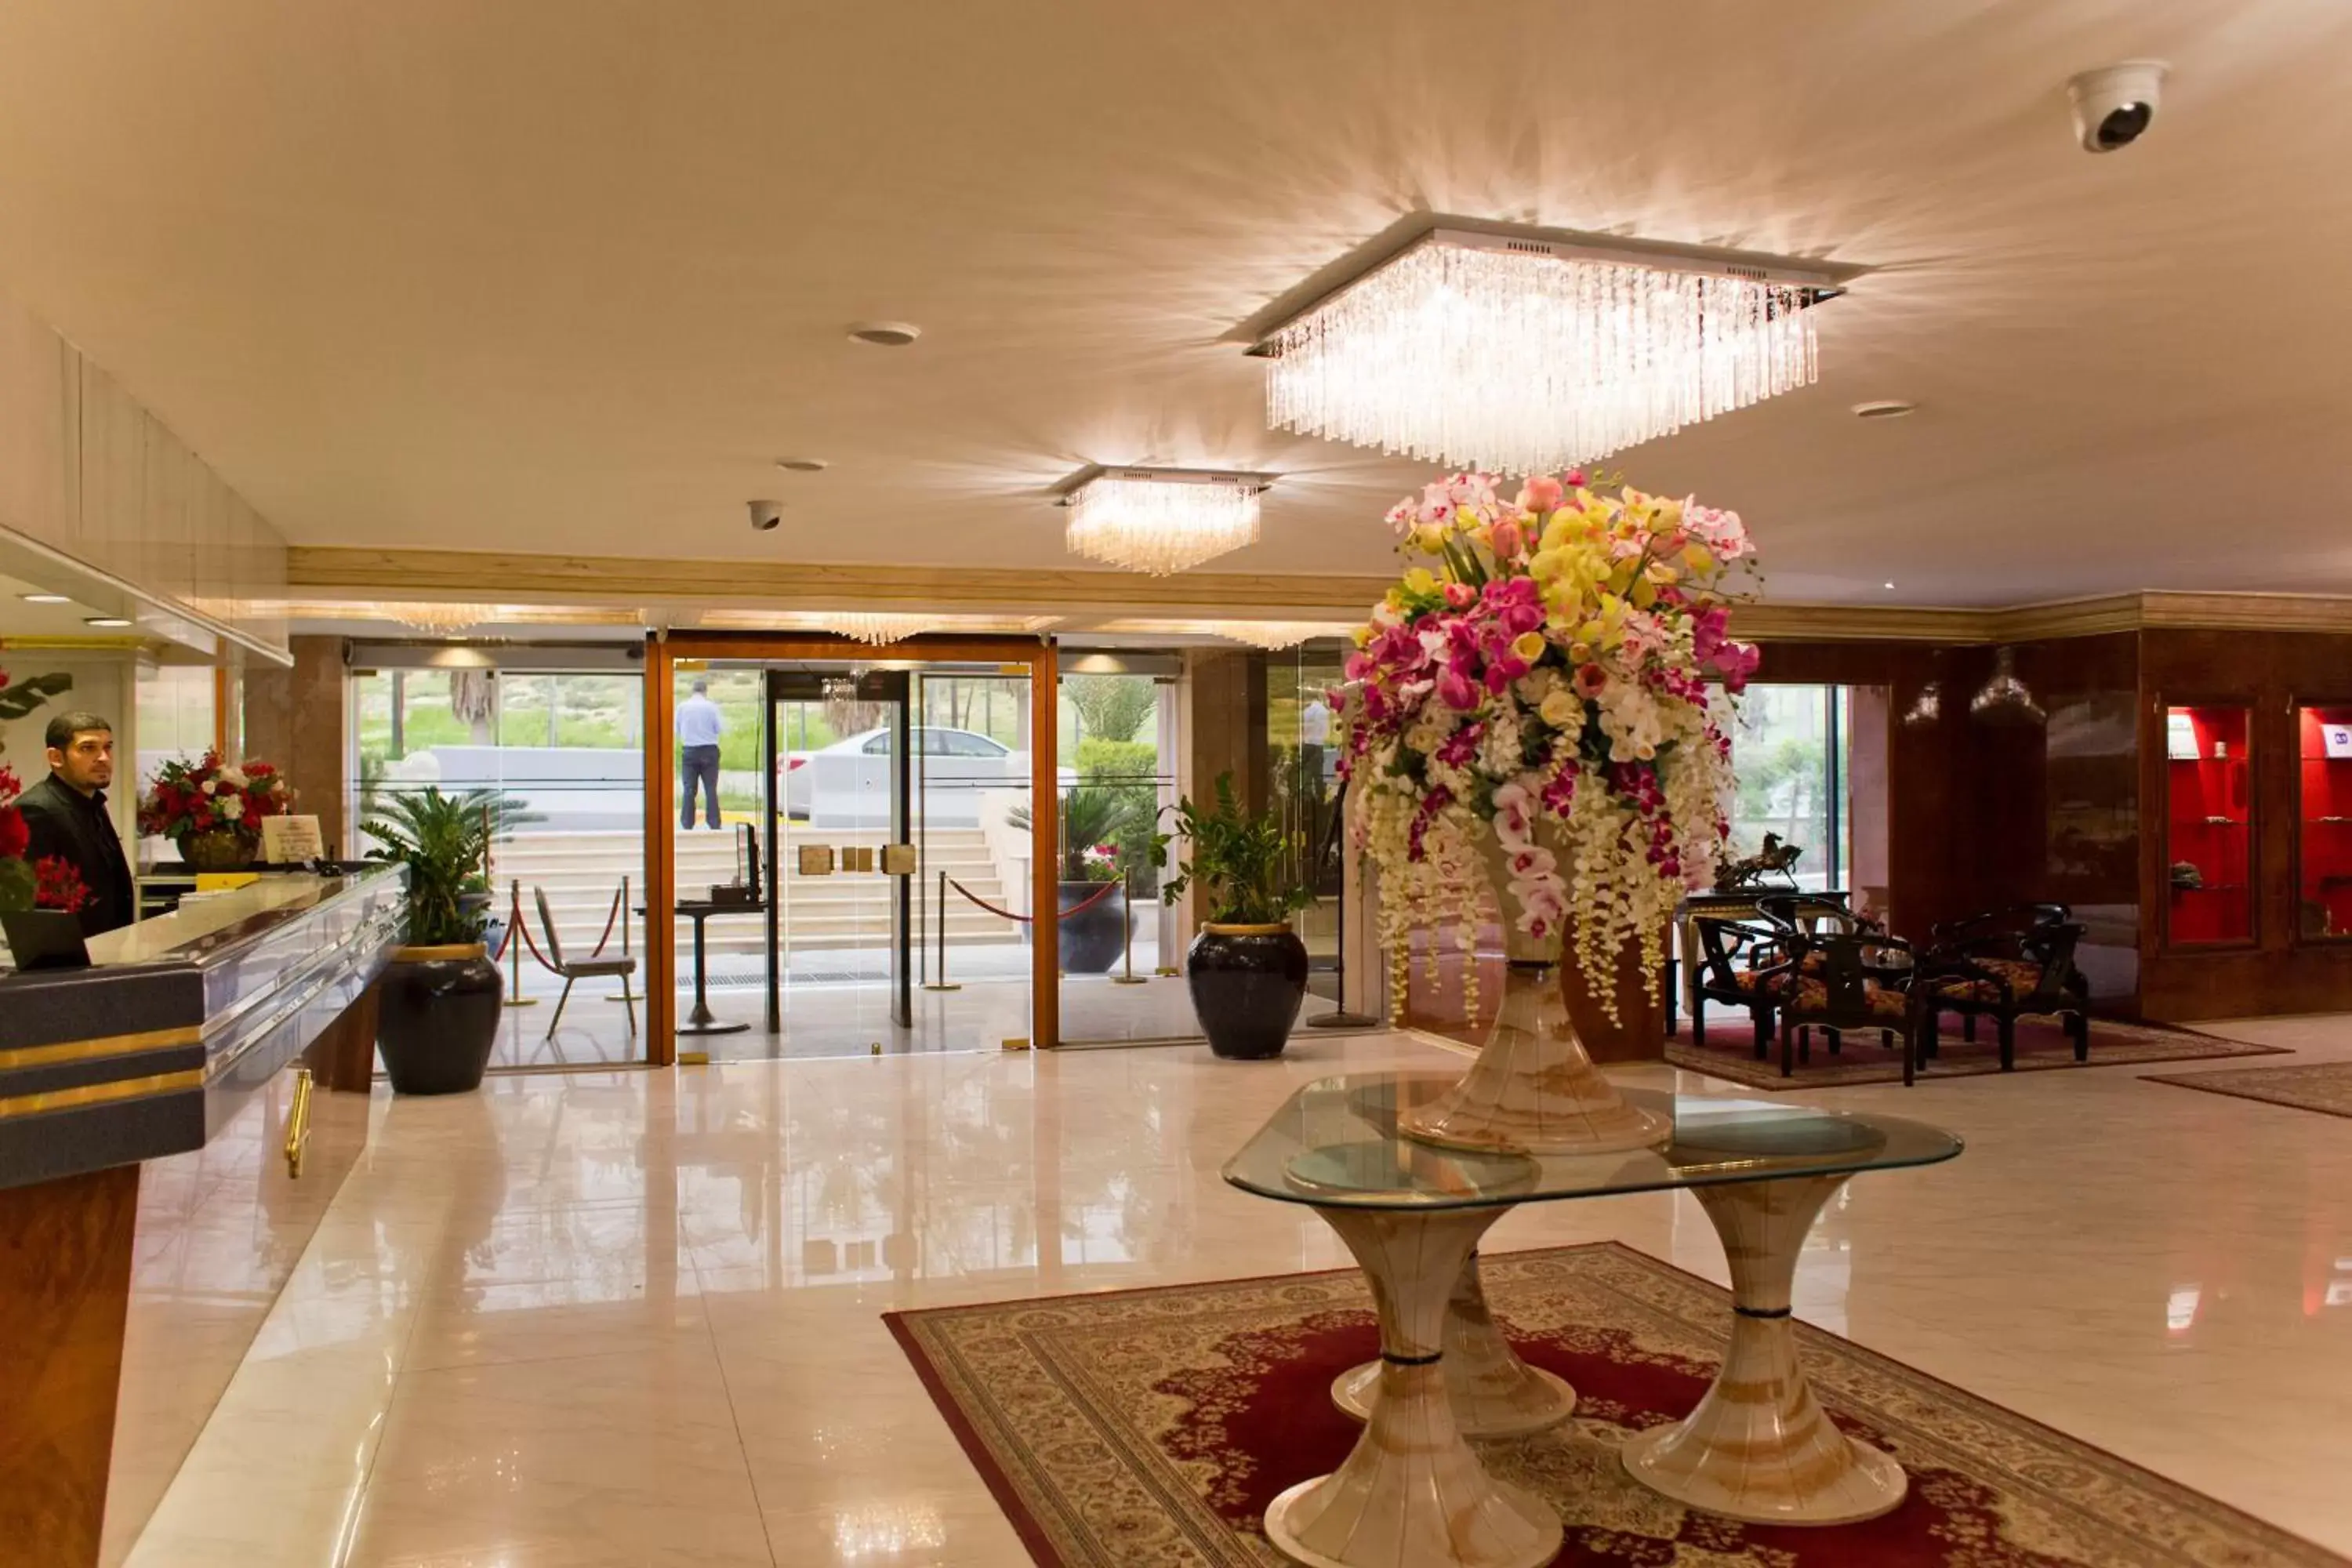 Lobby or reception, Lobby/Reception in Amman International Hotel